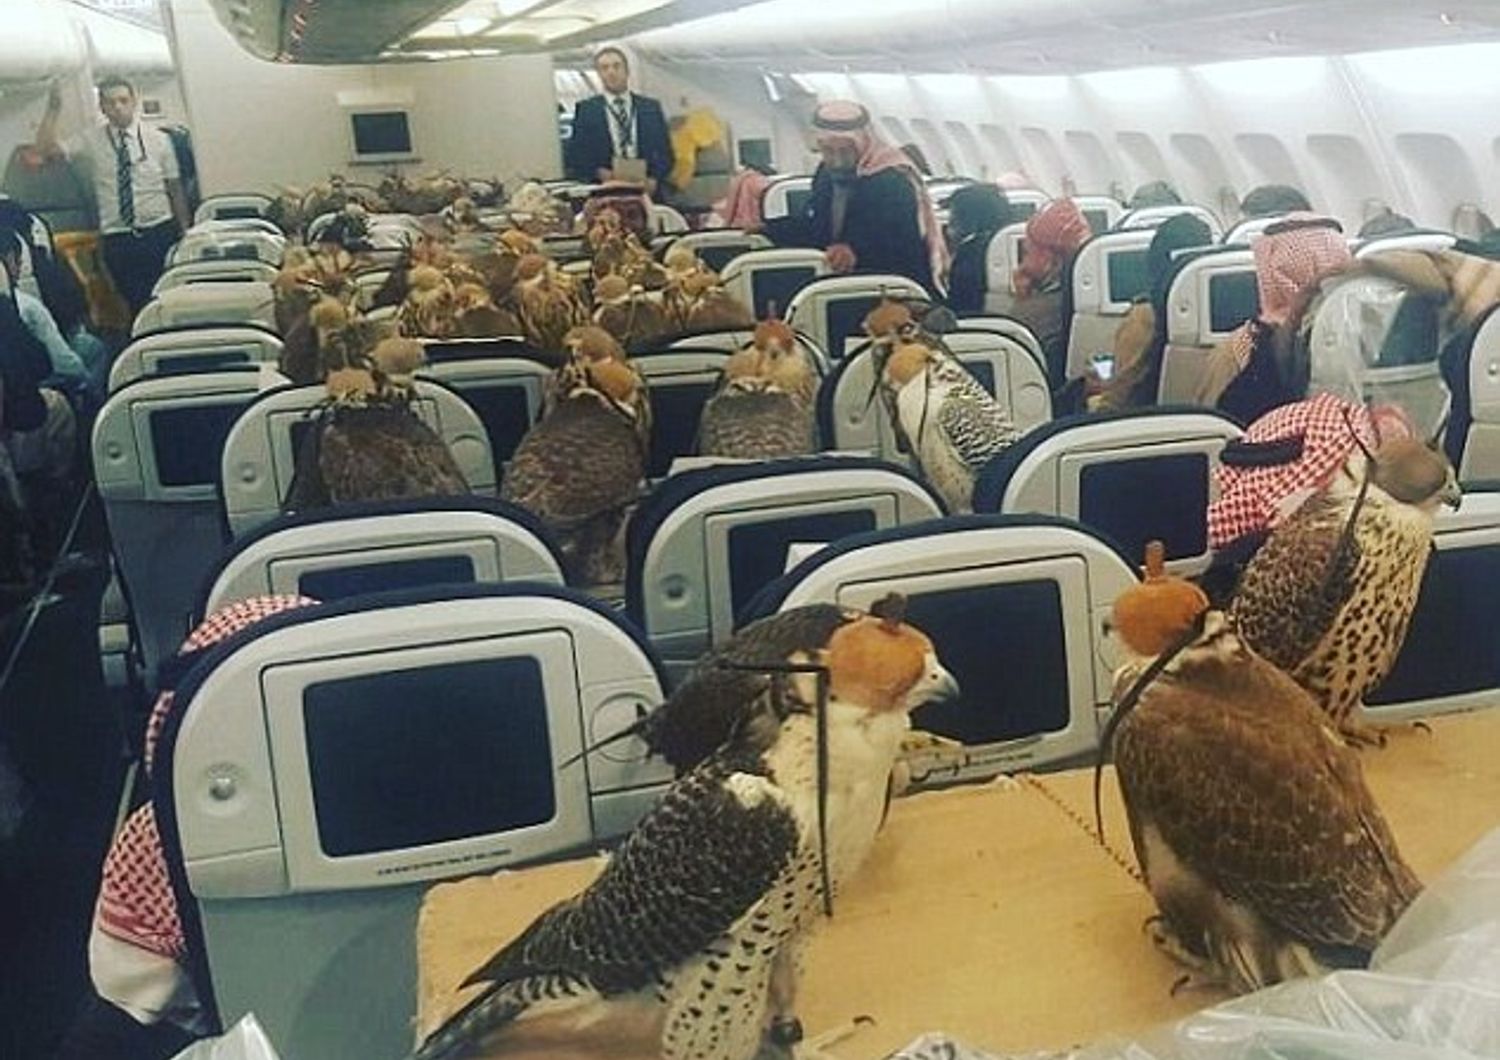 Ottanta falconi in aereo, principe saudita non rinuncia ai suoi animali